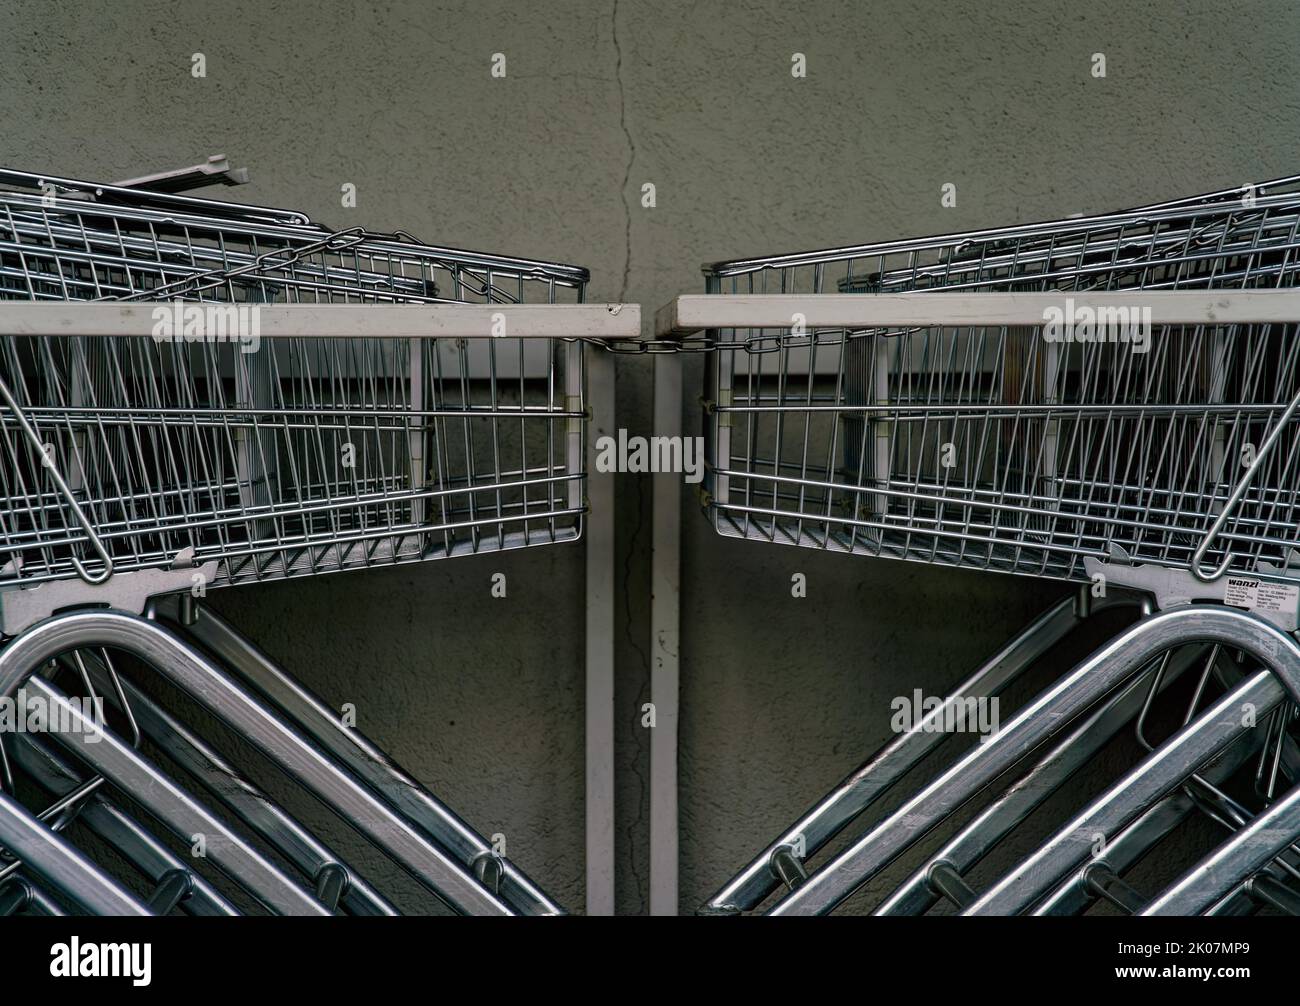 Einkaufswagen in Warteposition, symmetrische Ansicht Stockfoto